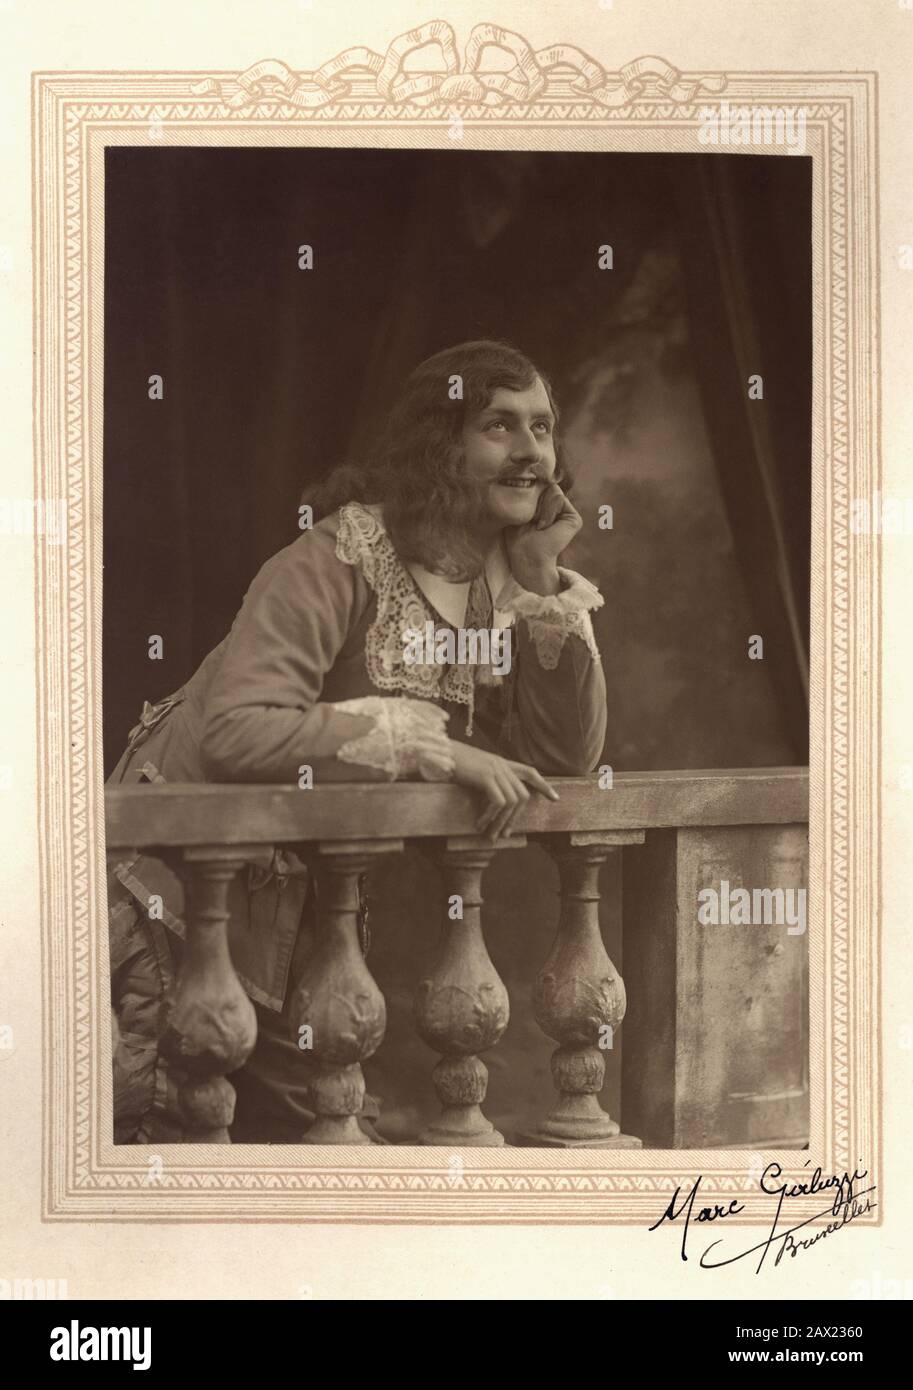 1920 ca , Bruxelles , BELGIO : l'attore teatrale francese JEAN ARBULEAU ( Parigi , 1895 – 1979 ) a CYRANO DE BERGERAC di Edmond Rostand ( 1868 - 1918 ) . Foto Di Marc Galuzzi , Bruxelles - TEATRO - TEATRO - TEATRO - baffi - baffi - pizzo - pizzo - costume da scena - abito di scena - capelli lunghi uomo - uomo capelli corti - sorriso - sorriso - sorriso - GAY - OMOSESSUALE - OMOSESSUALITÀ - OMOSESSUALE - omosessualità - LGBT - sognatore - Sognatore - amante - innamorato ---- Archivio GBB Foto Stock